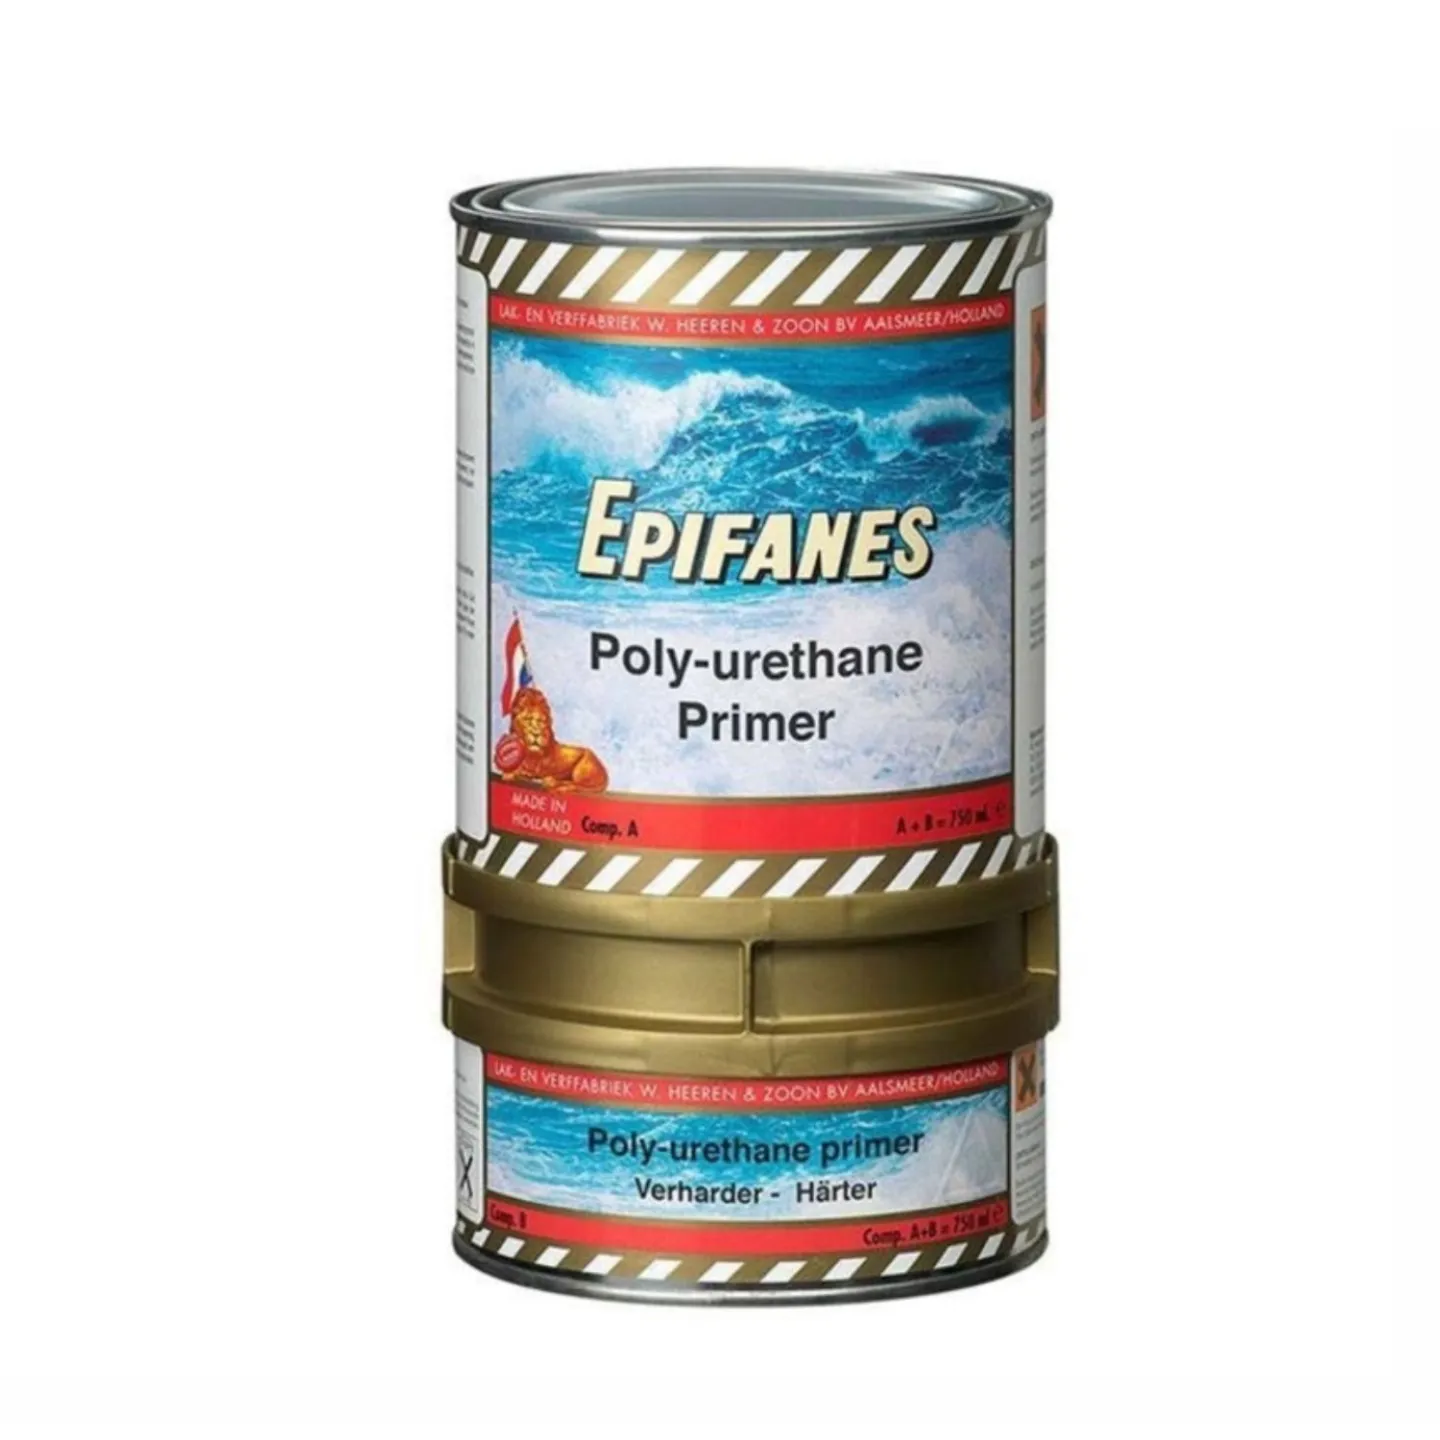 Epifanes poly-urethane primer.